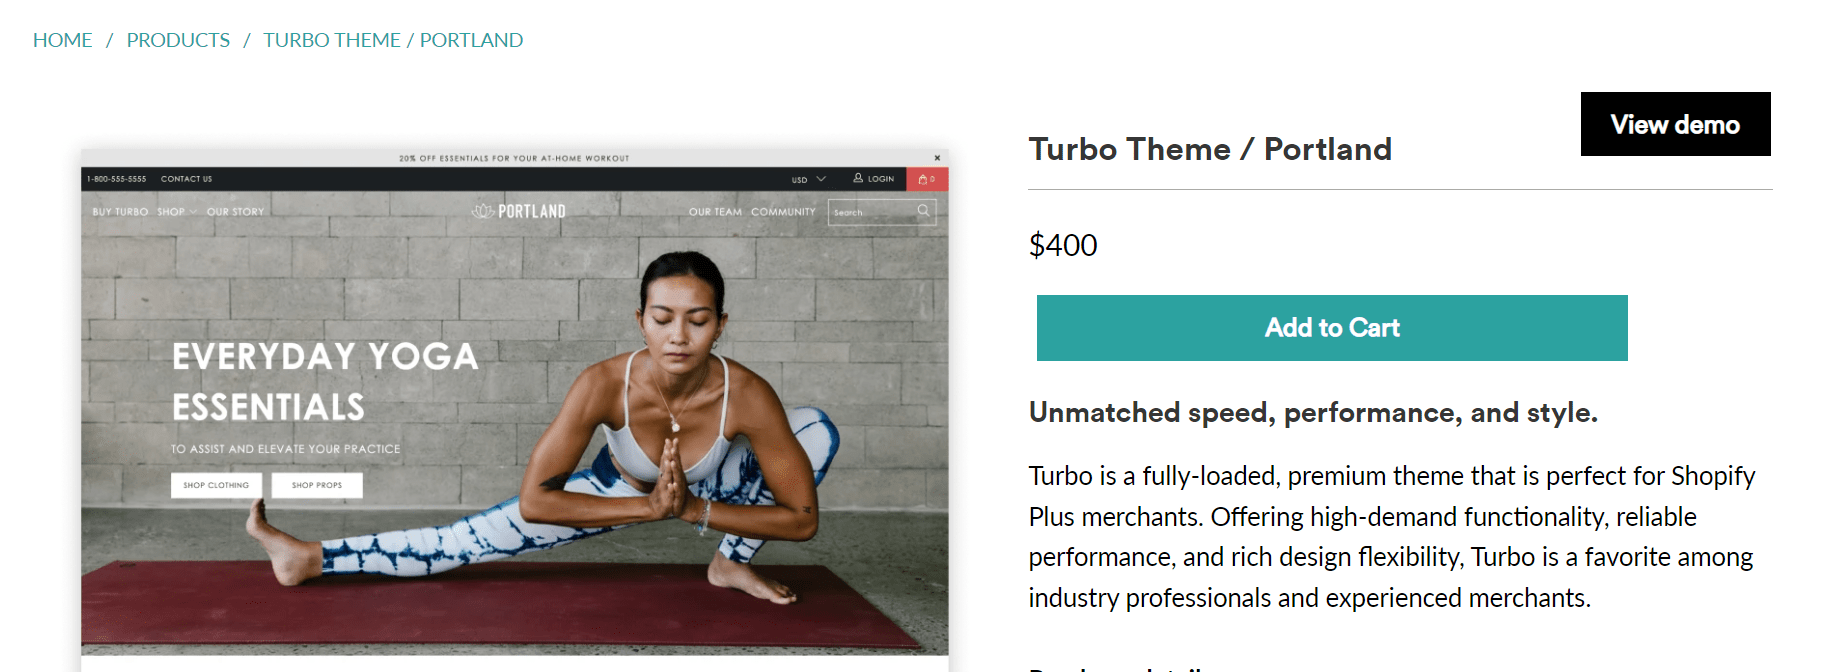 turbo theme